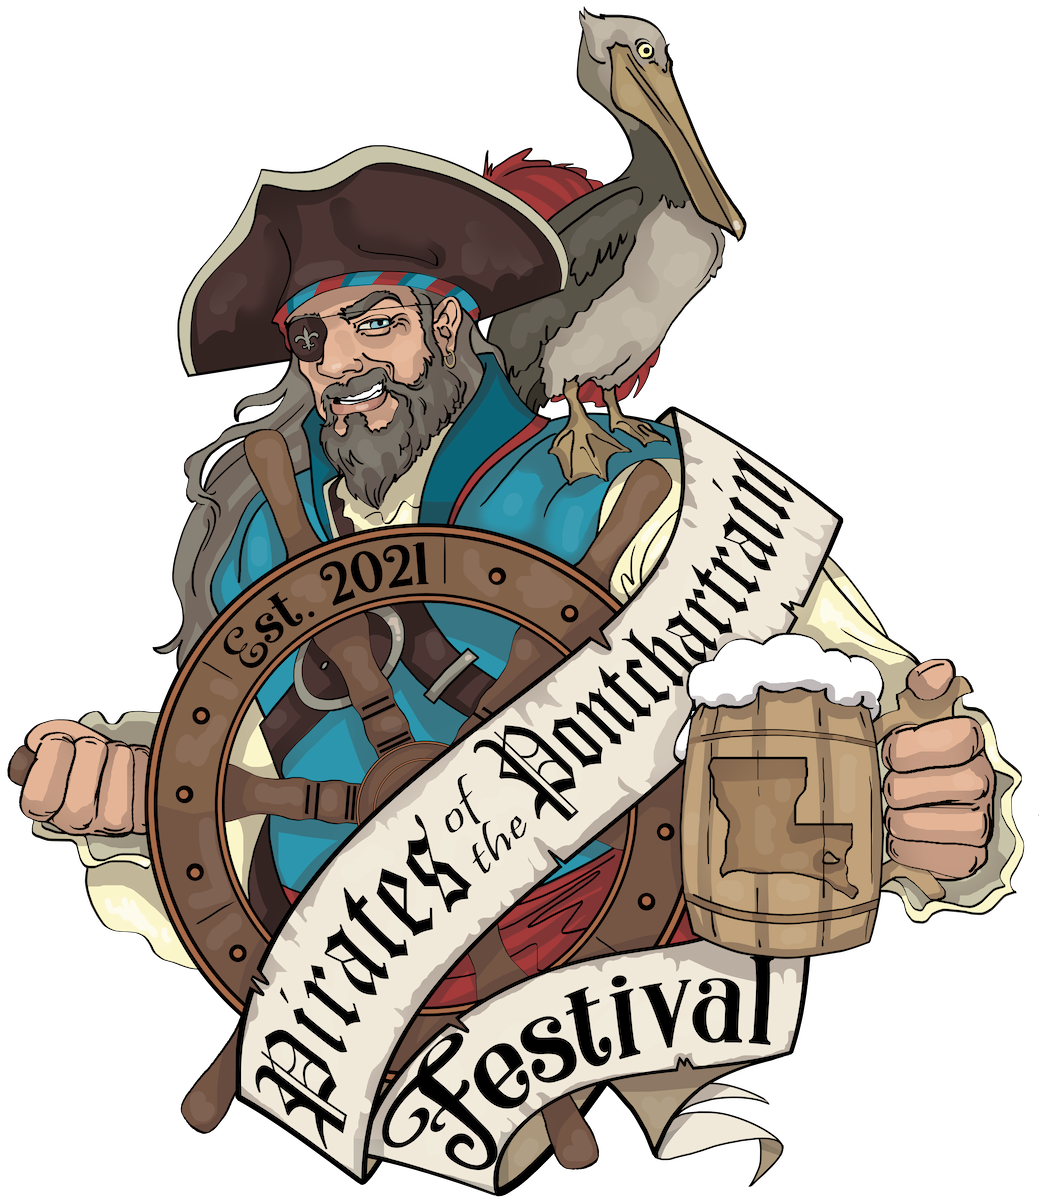 Pirate Fest Louisiana Renaissance Festival